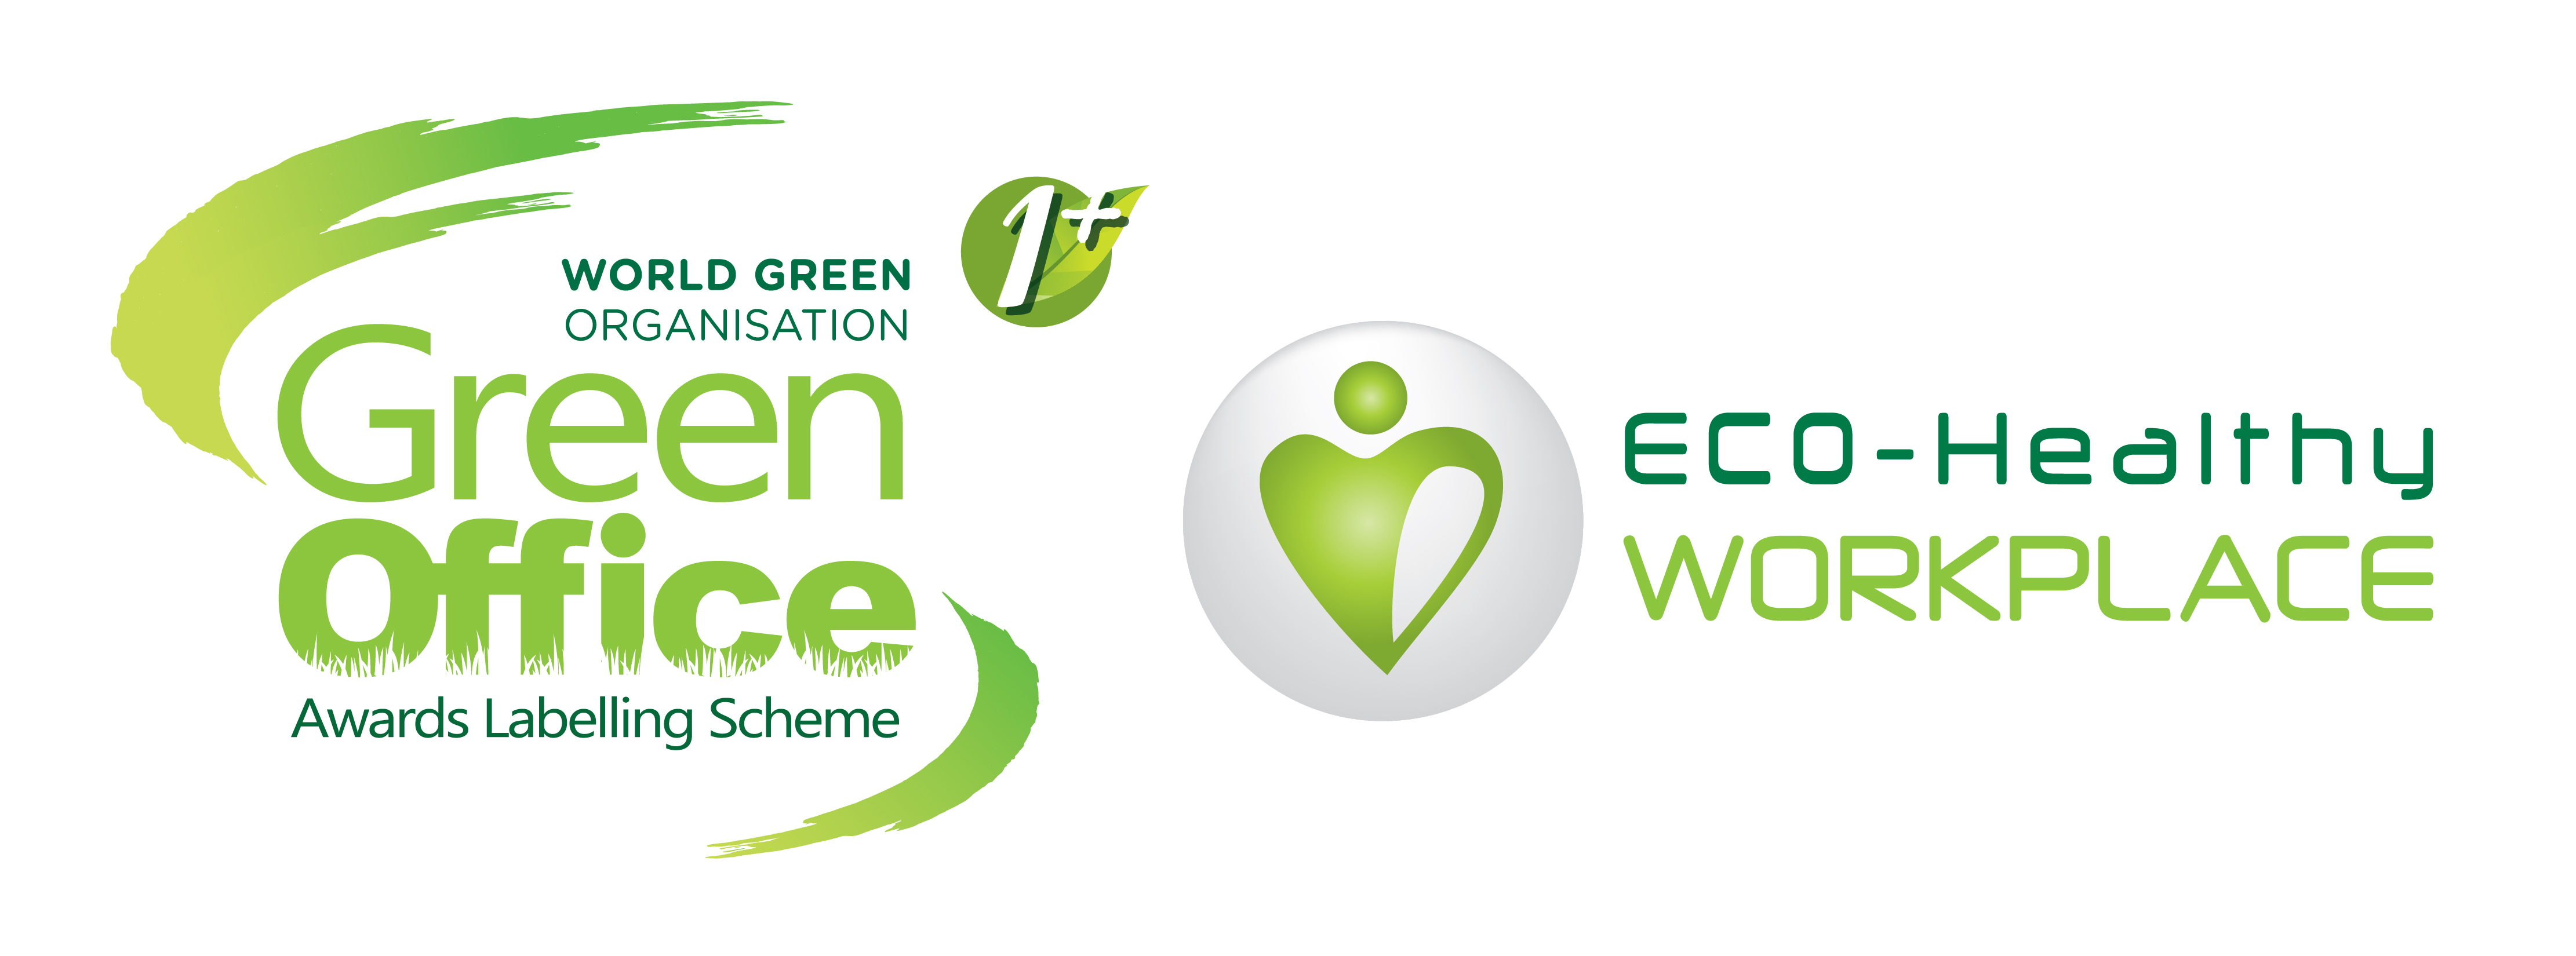 世界綠色組織「可持續發展目標 – 綠色辦公室獎勵計劃」「綠色辦公室」及「健康工作間」